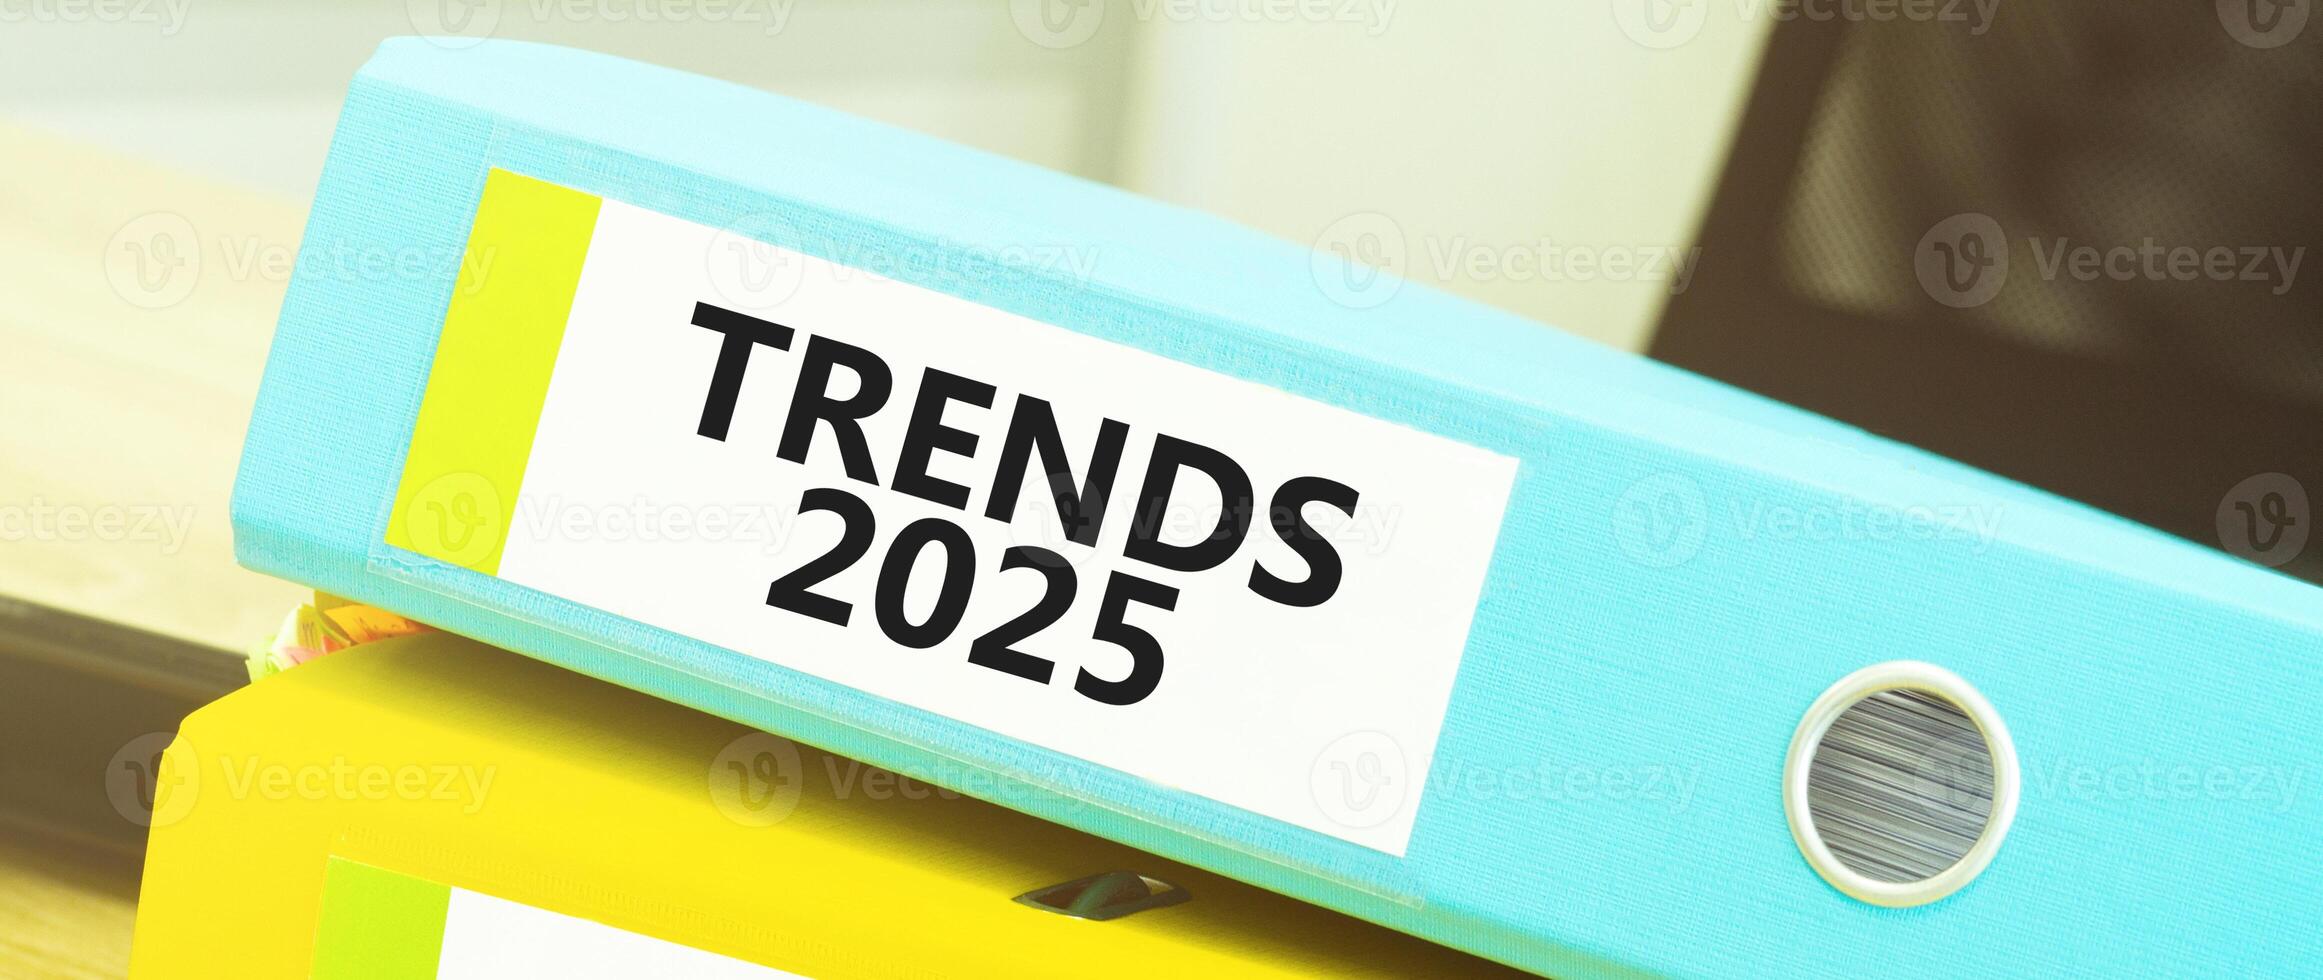 tendências 2025 rótulo em brilhante azul Arquivo pasta. organizacional e planejamento conceito foto